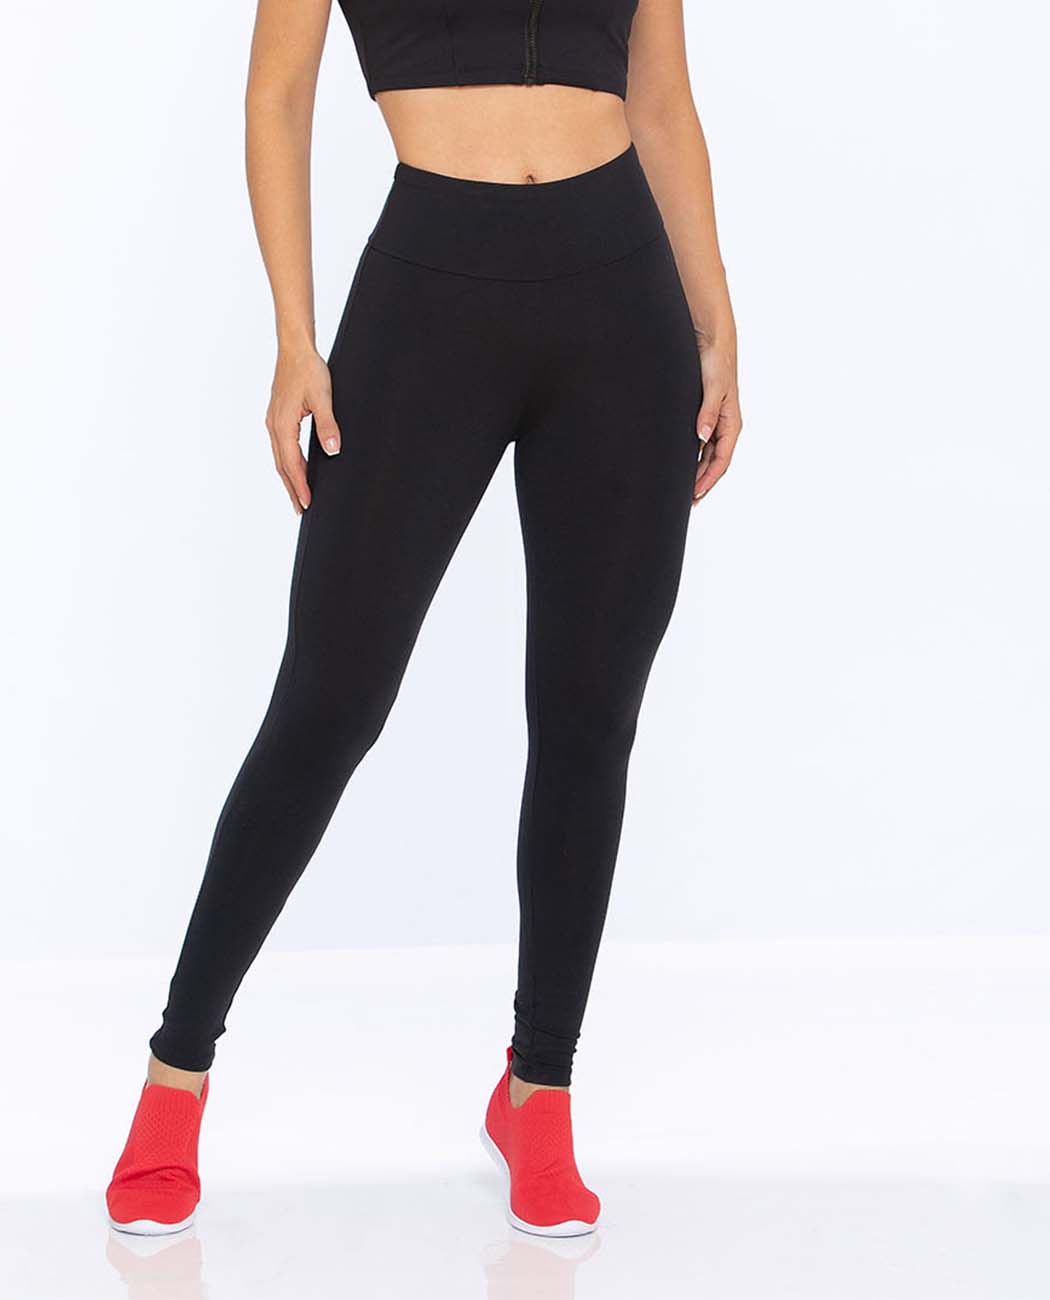 Morena Fitness - Aquele legging póa que você vai arrasar nos seus treinos!  . Disponível.Tamanho único! . #lookinspiração #lookfitness #leggings  #macacoes #shortssaiafitness